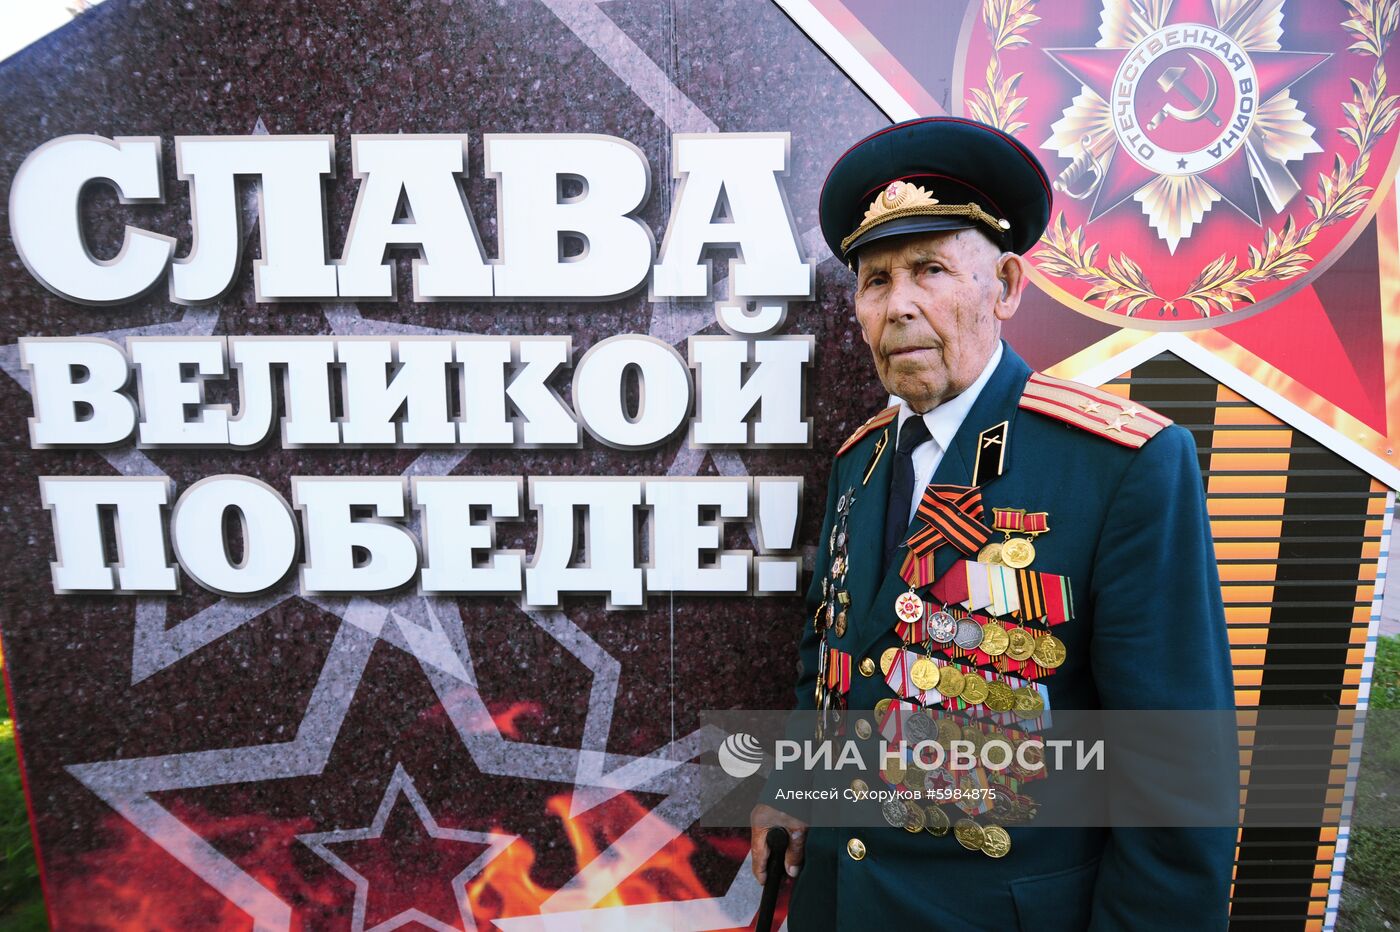 Ветеран Великой Отечественной войны И.И. Вокин 